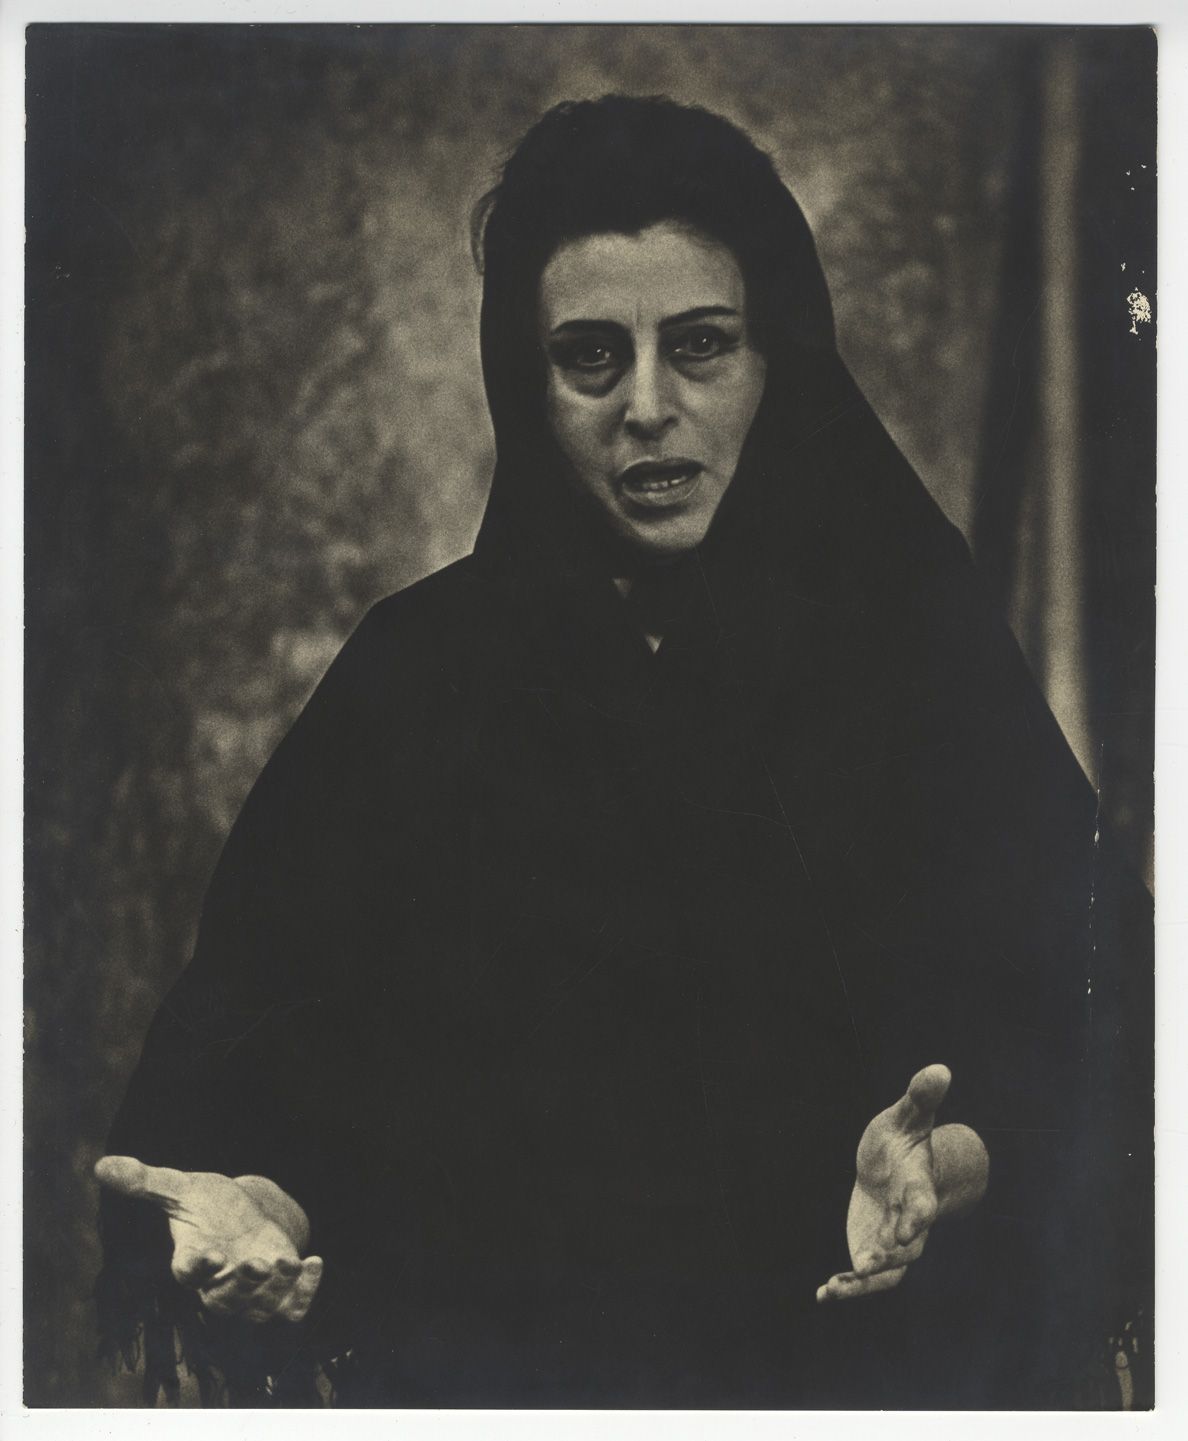 Null 安娜-马格纳尼（1908-1973），意大利女演员。复古银版画，28.2 x 23厘米。摄影师Nicolas TREATT的印章。弯曲，小的缺乏胶质。